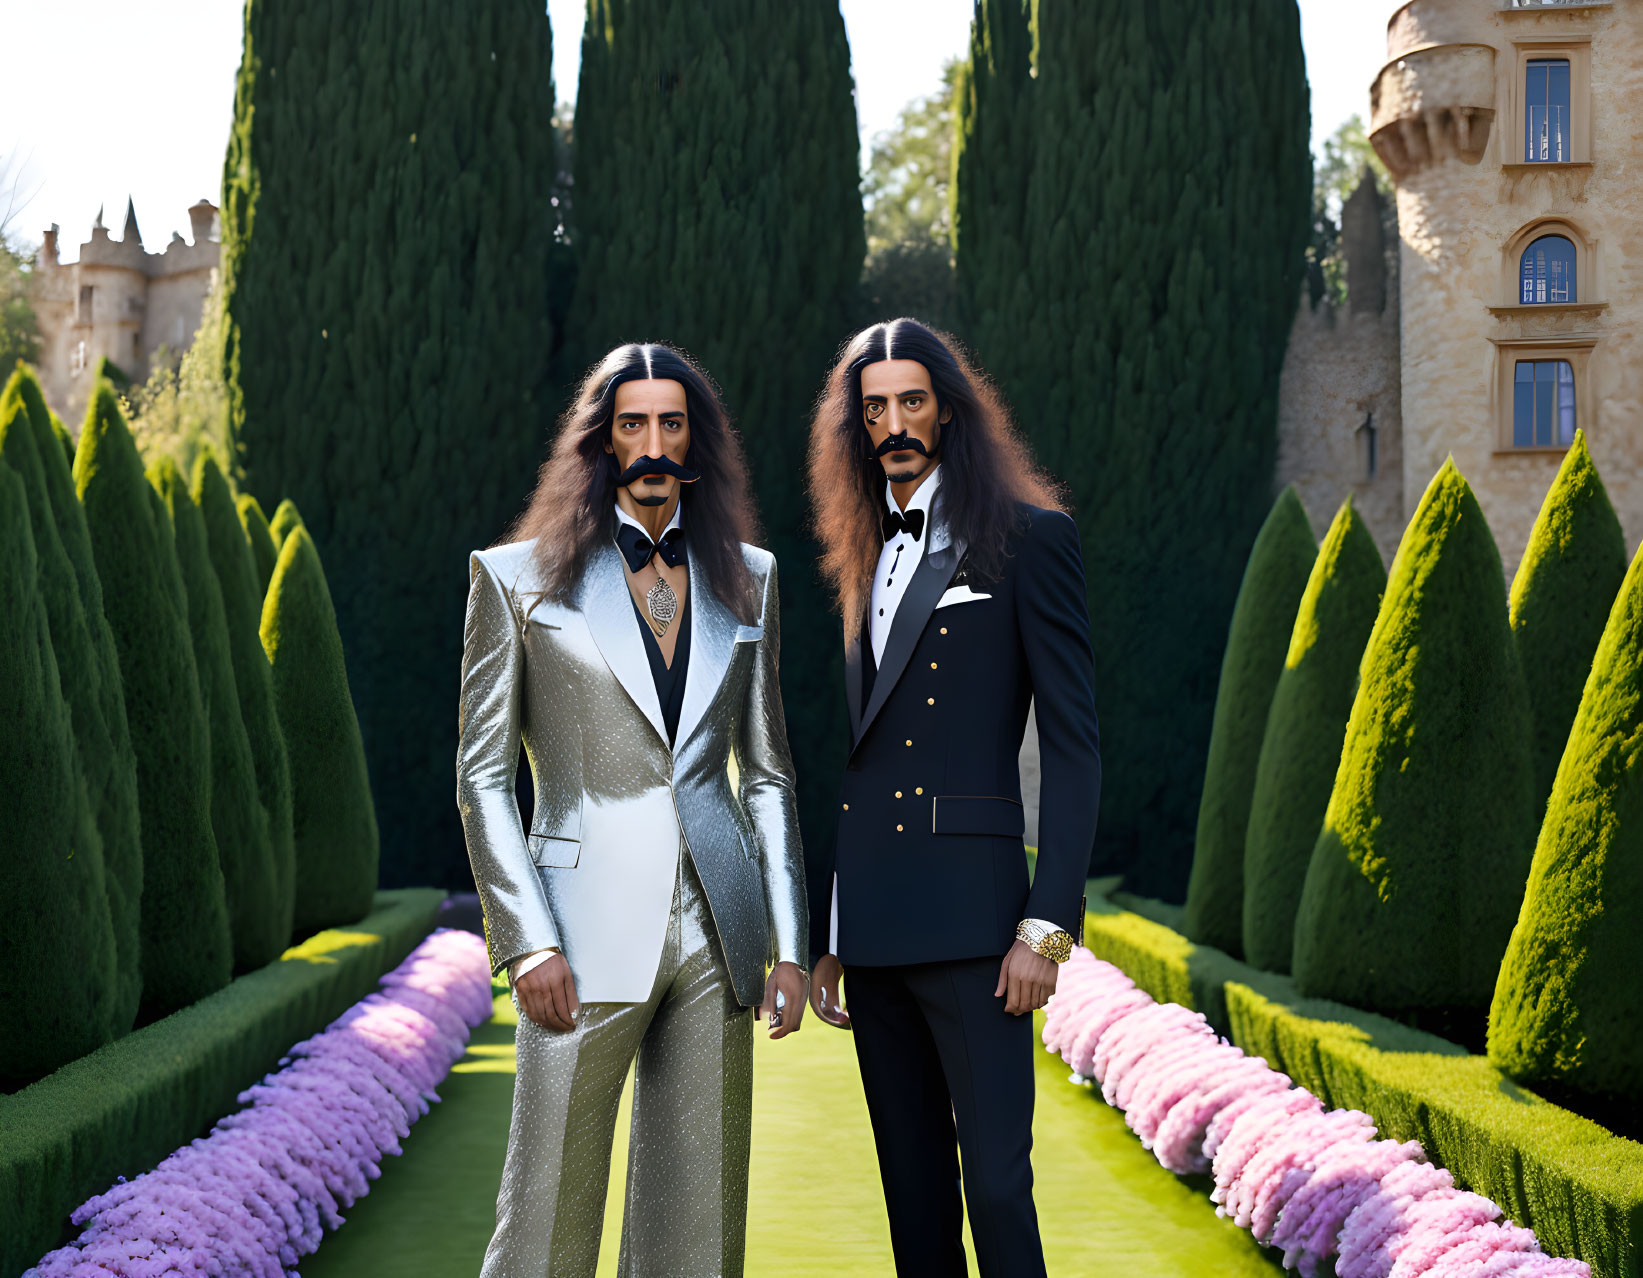 The Dali Twins in Dalis Garden